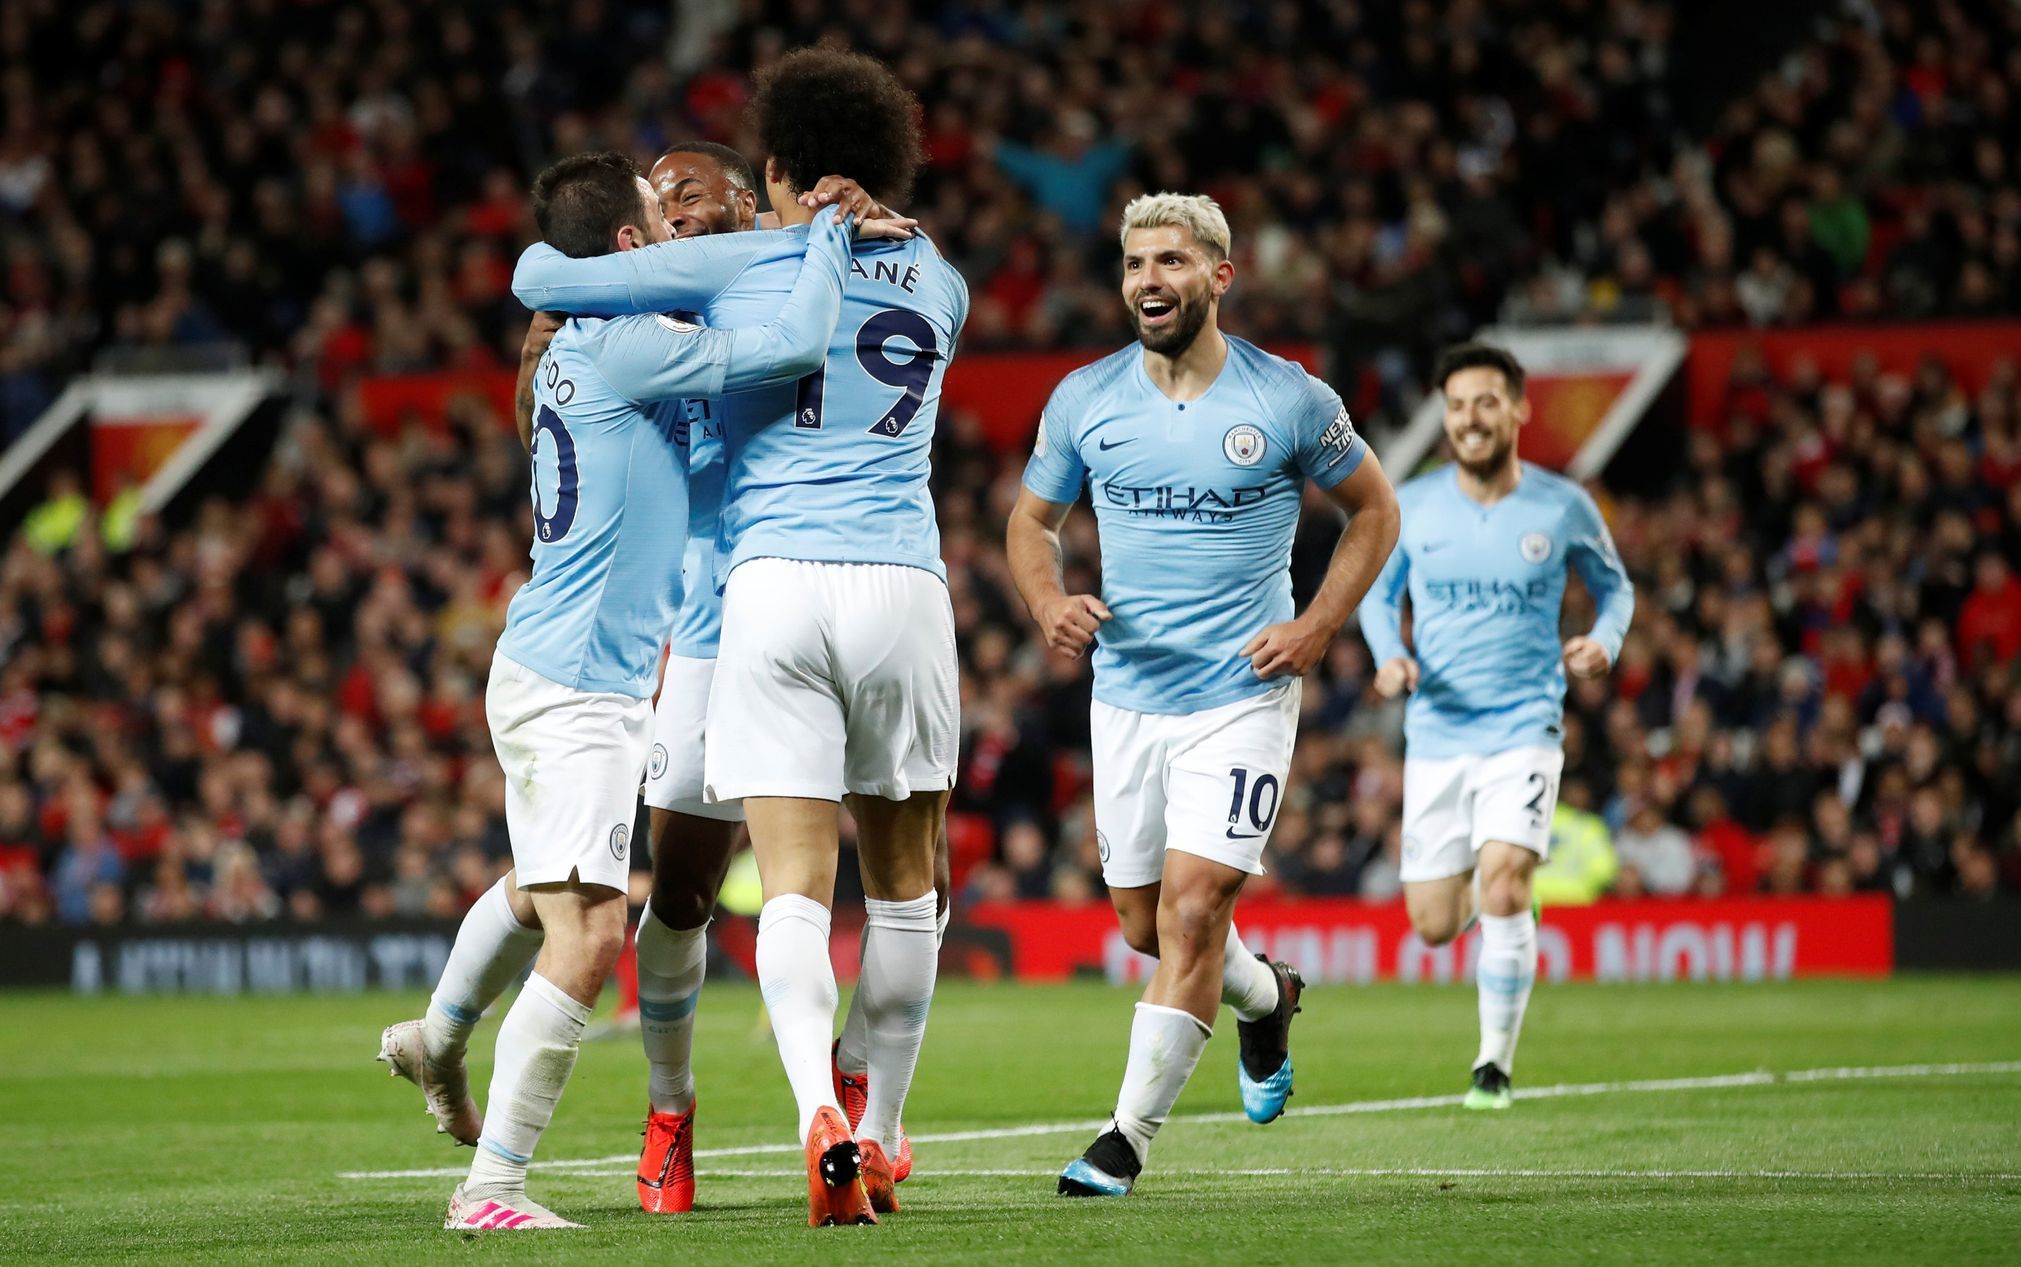 31. kolo anglické fotbalové ligy 2018/19, Manchester United - Manchester City: Fotbalisté City oslavují vstřelený gól.